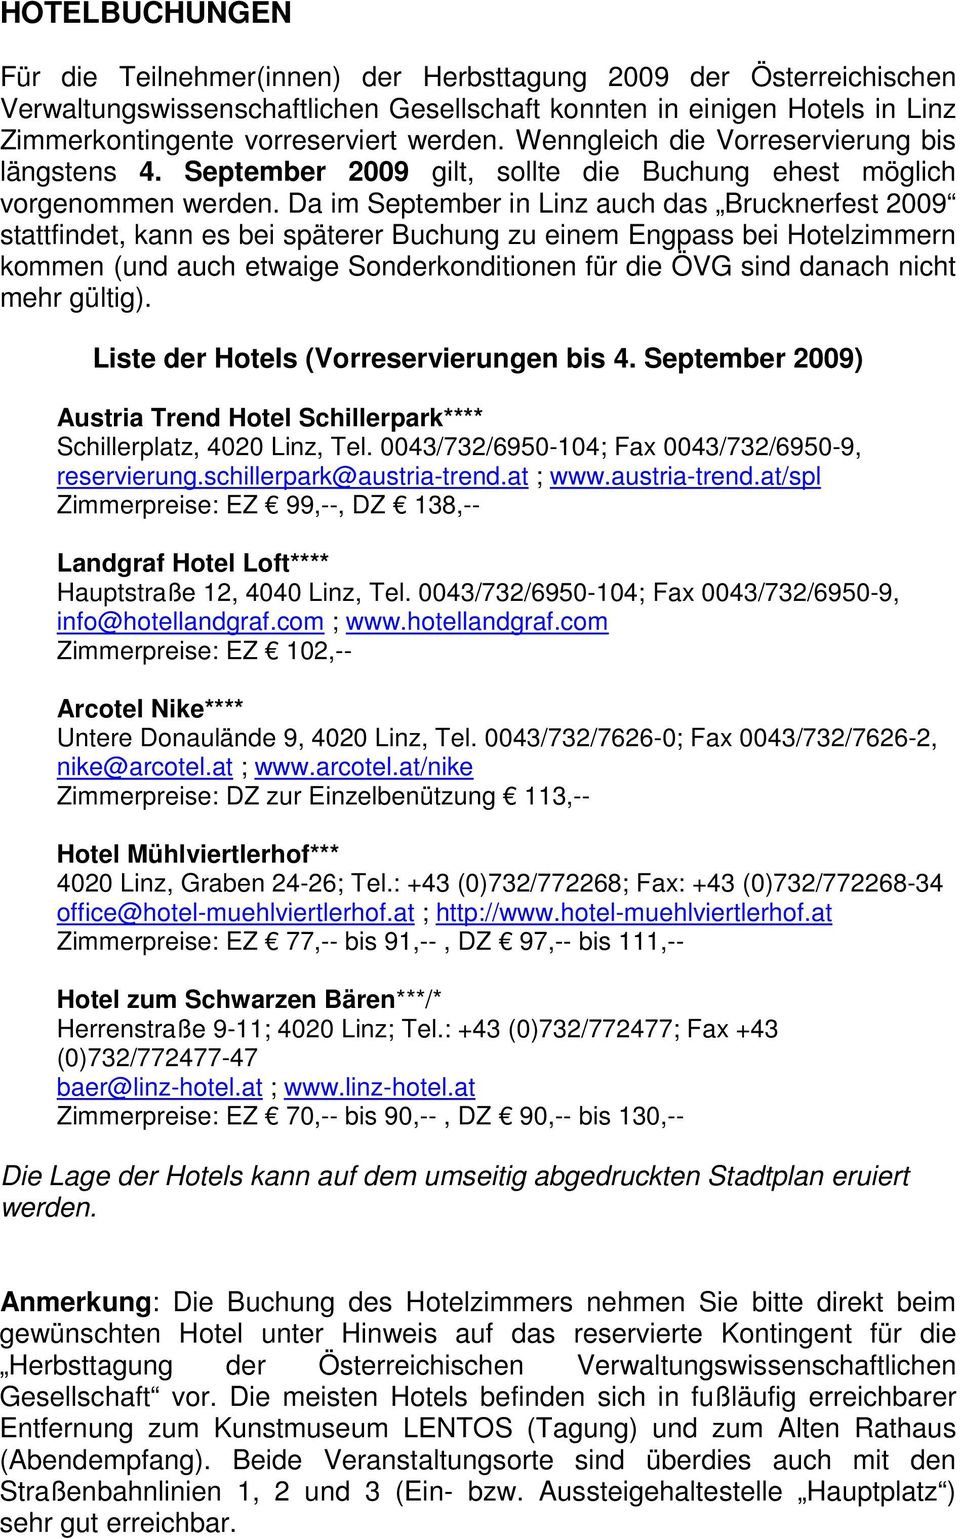 Da im September in Linz auch das Brucknerfest 2009 stattfindet, kann es bei späterer Buchung zu einem Engpass bei Hotelzimmern kommen (und auch etwaige Sonderkonditionen für die ÖVG sind danach nicht